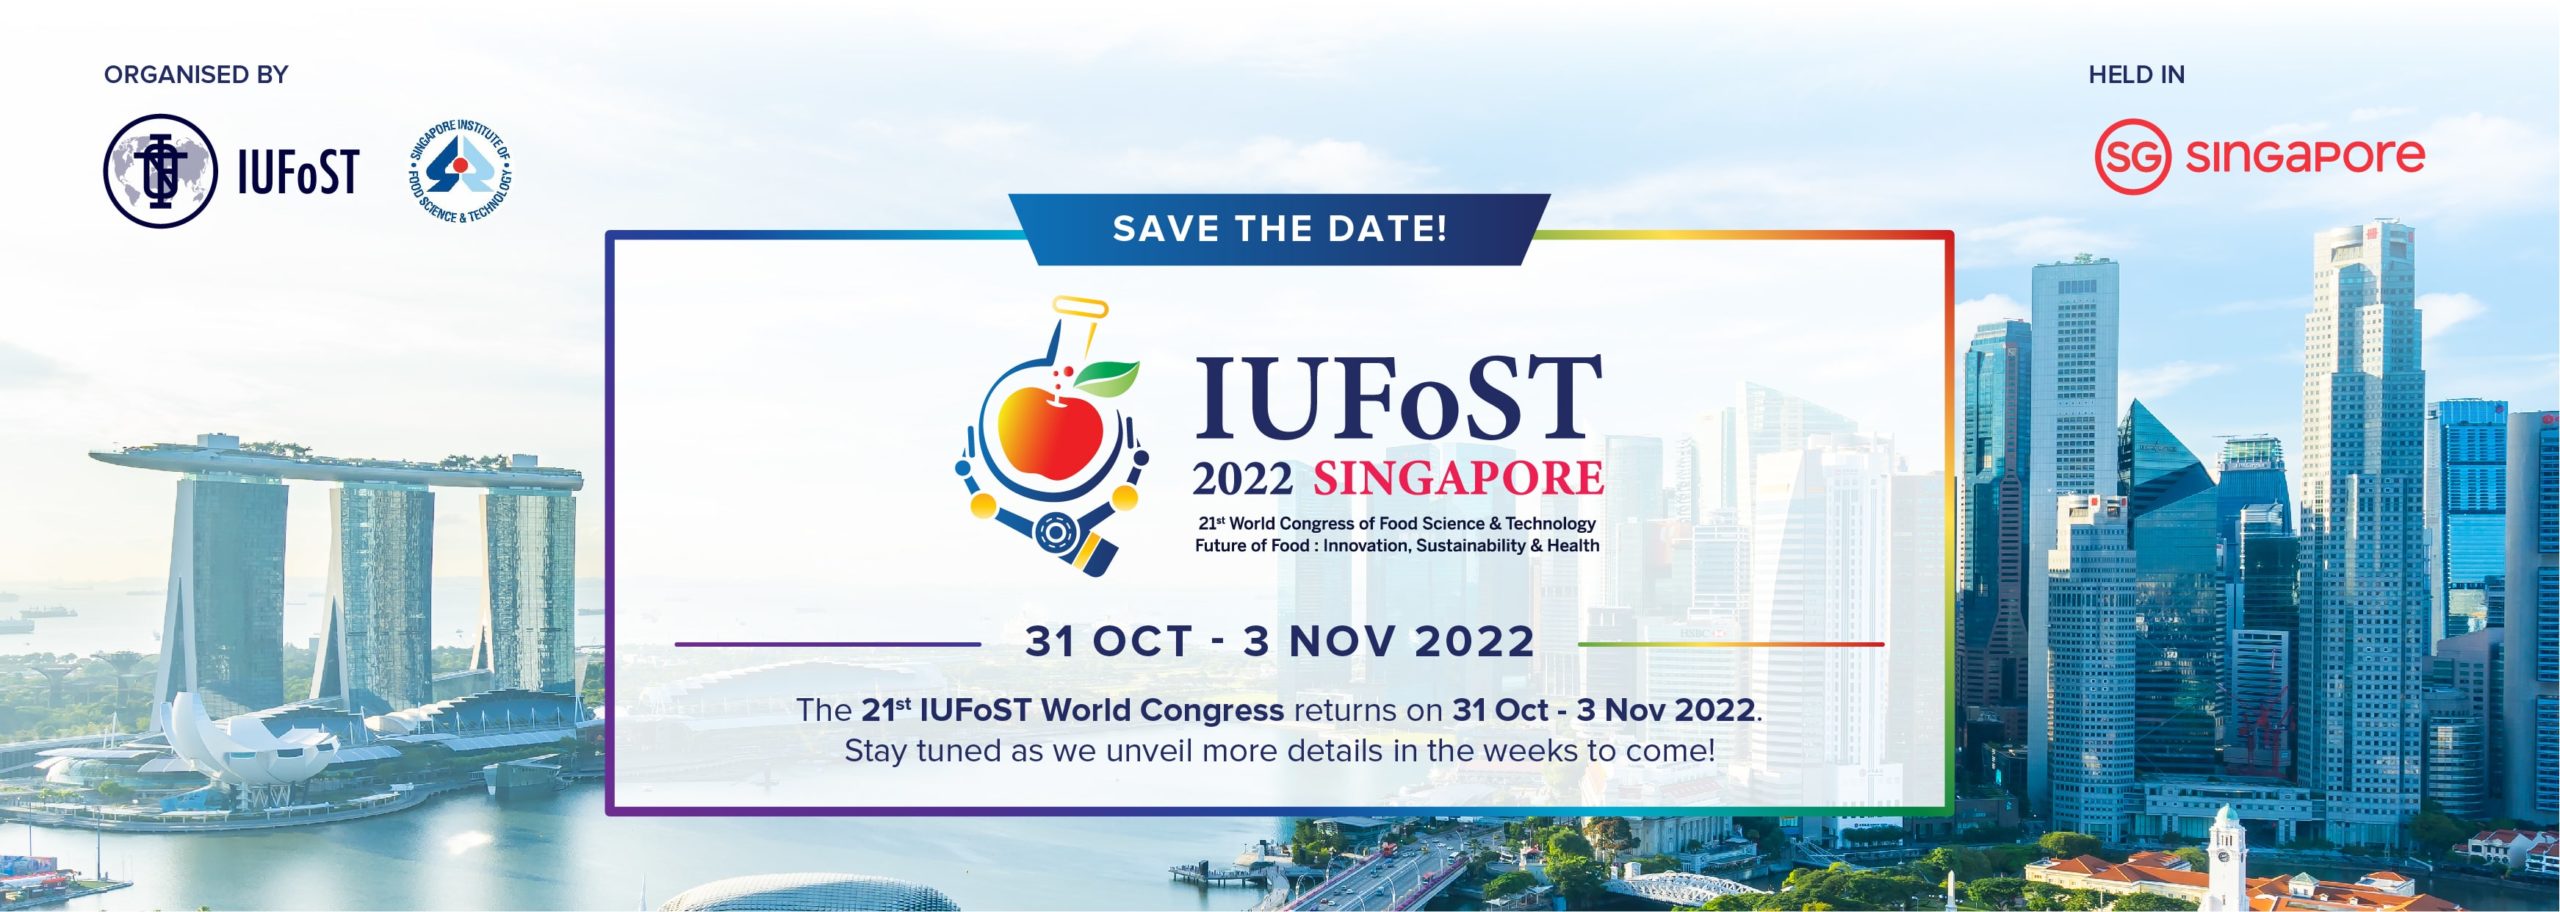 IUFoST 2022 Singapore